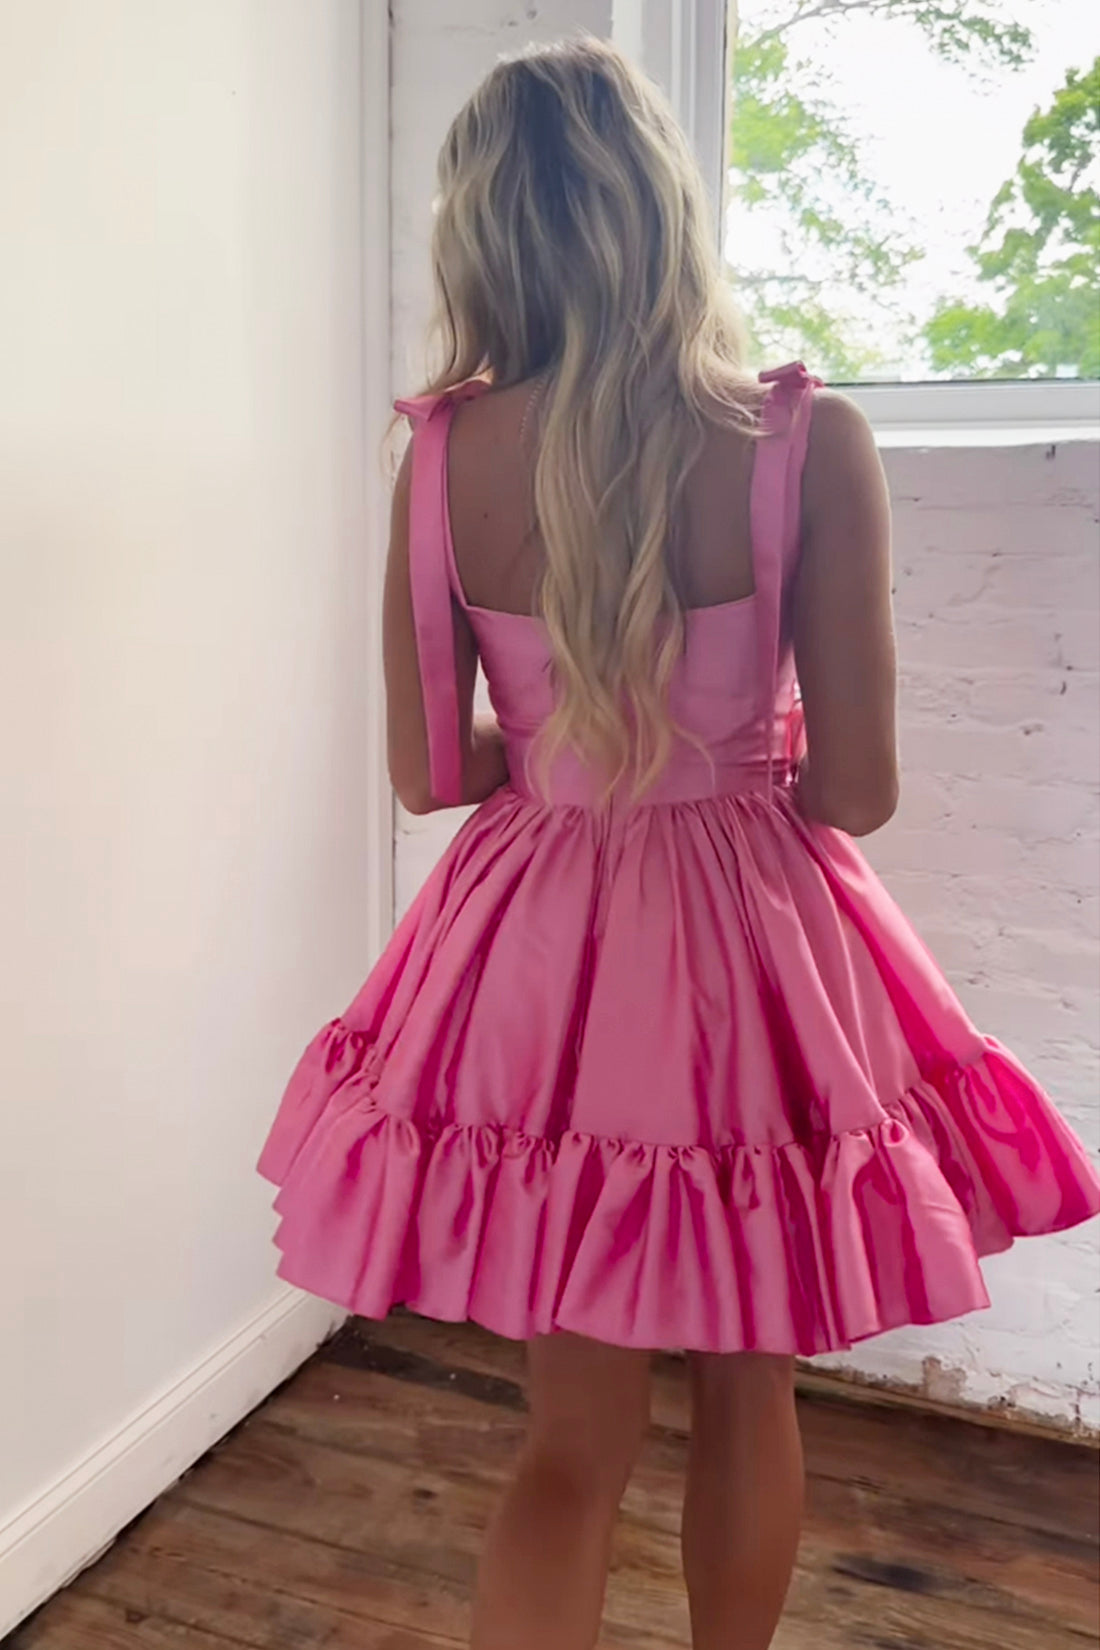 Cute A-line Sweetheart Satin Pink Homecoming Dress, Pink Short Graduation Dress